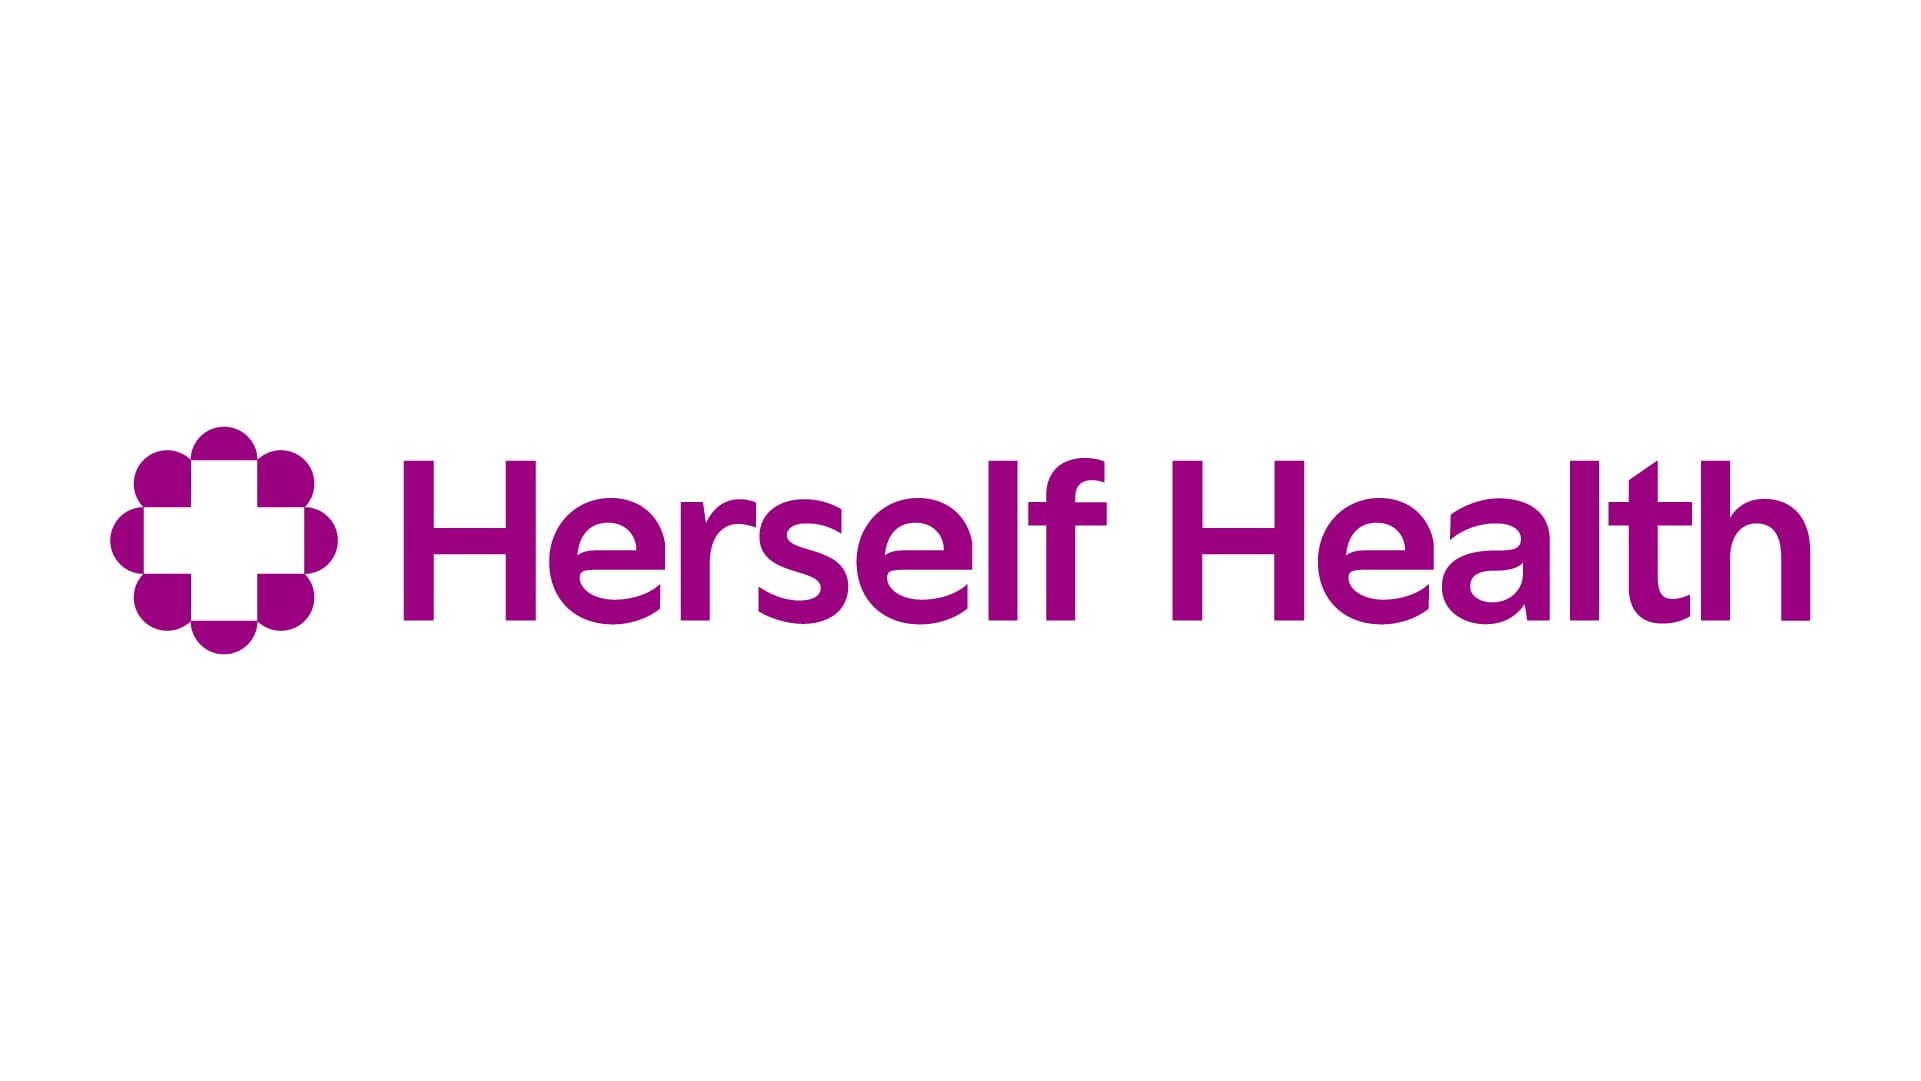 65歳以上の女性に対する一次医療提供者であるHerself Healthが2,600万ドルを調達